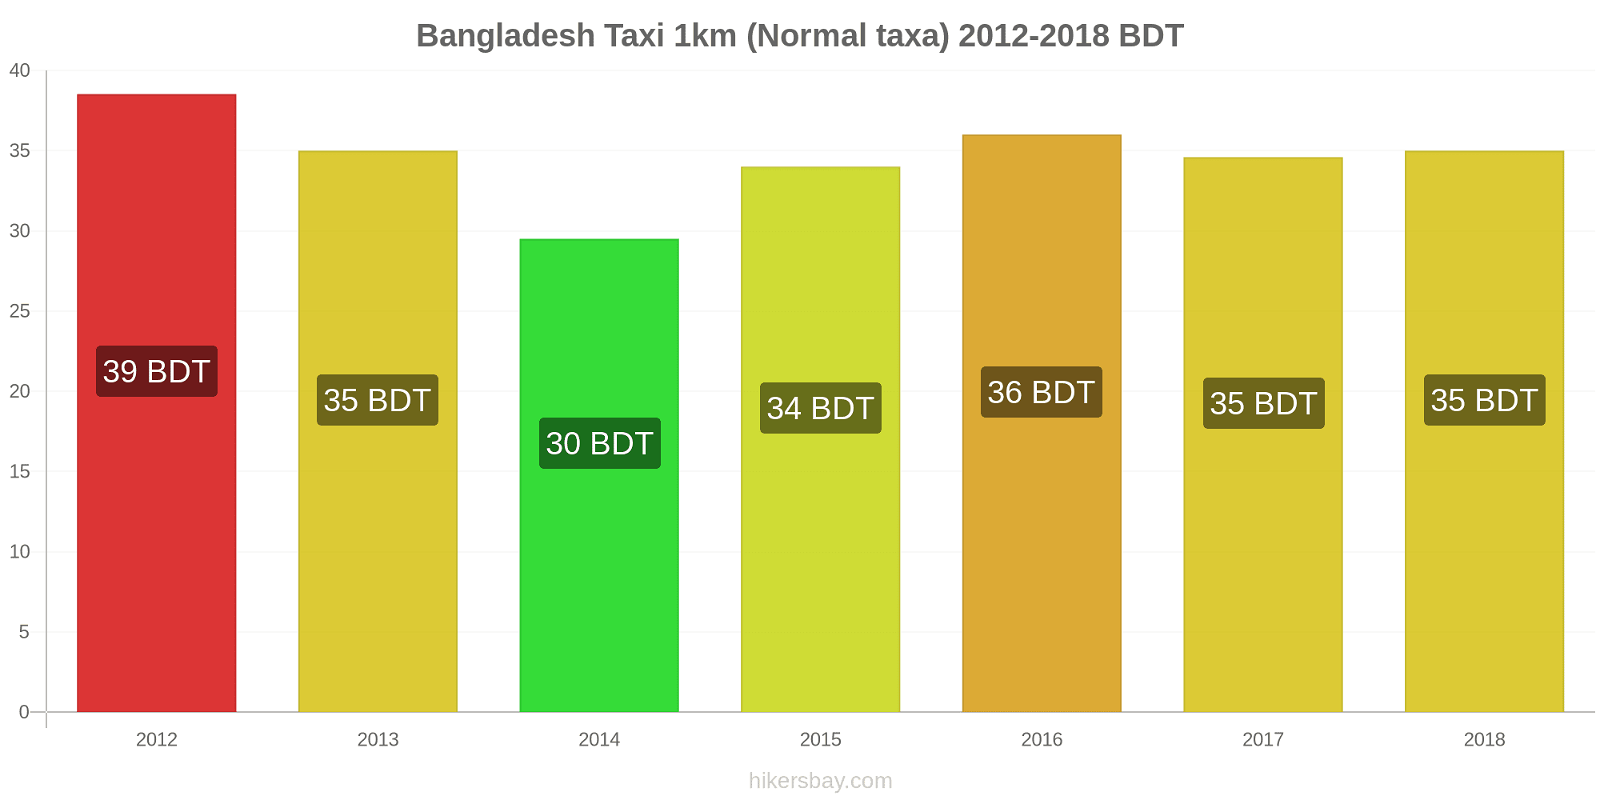 Bangladesh prisändringar Taxi 1km (Normal taxa) hikersbay.com